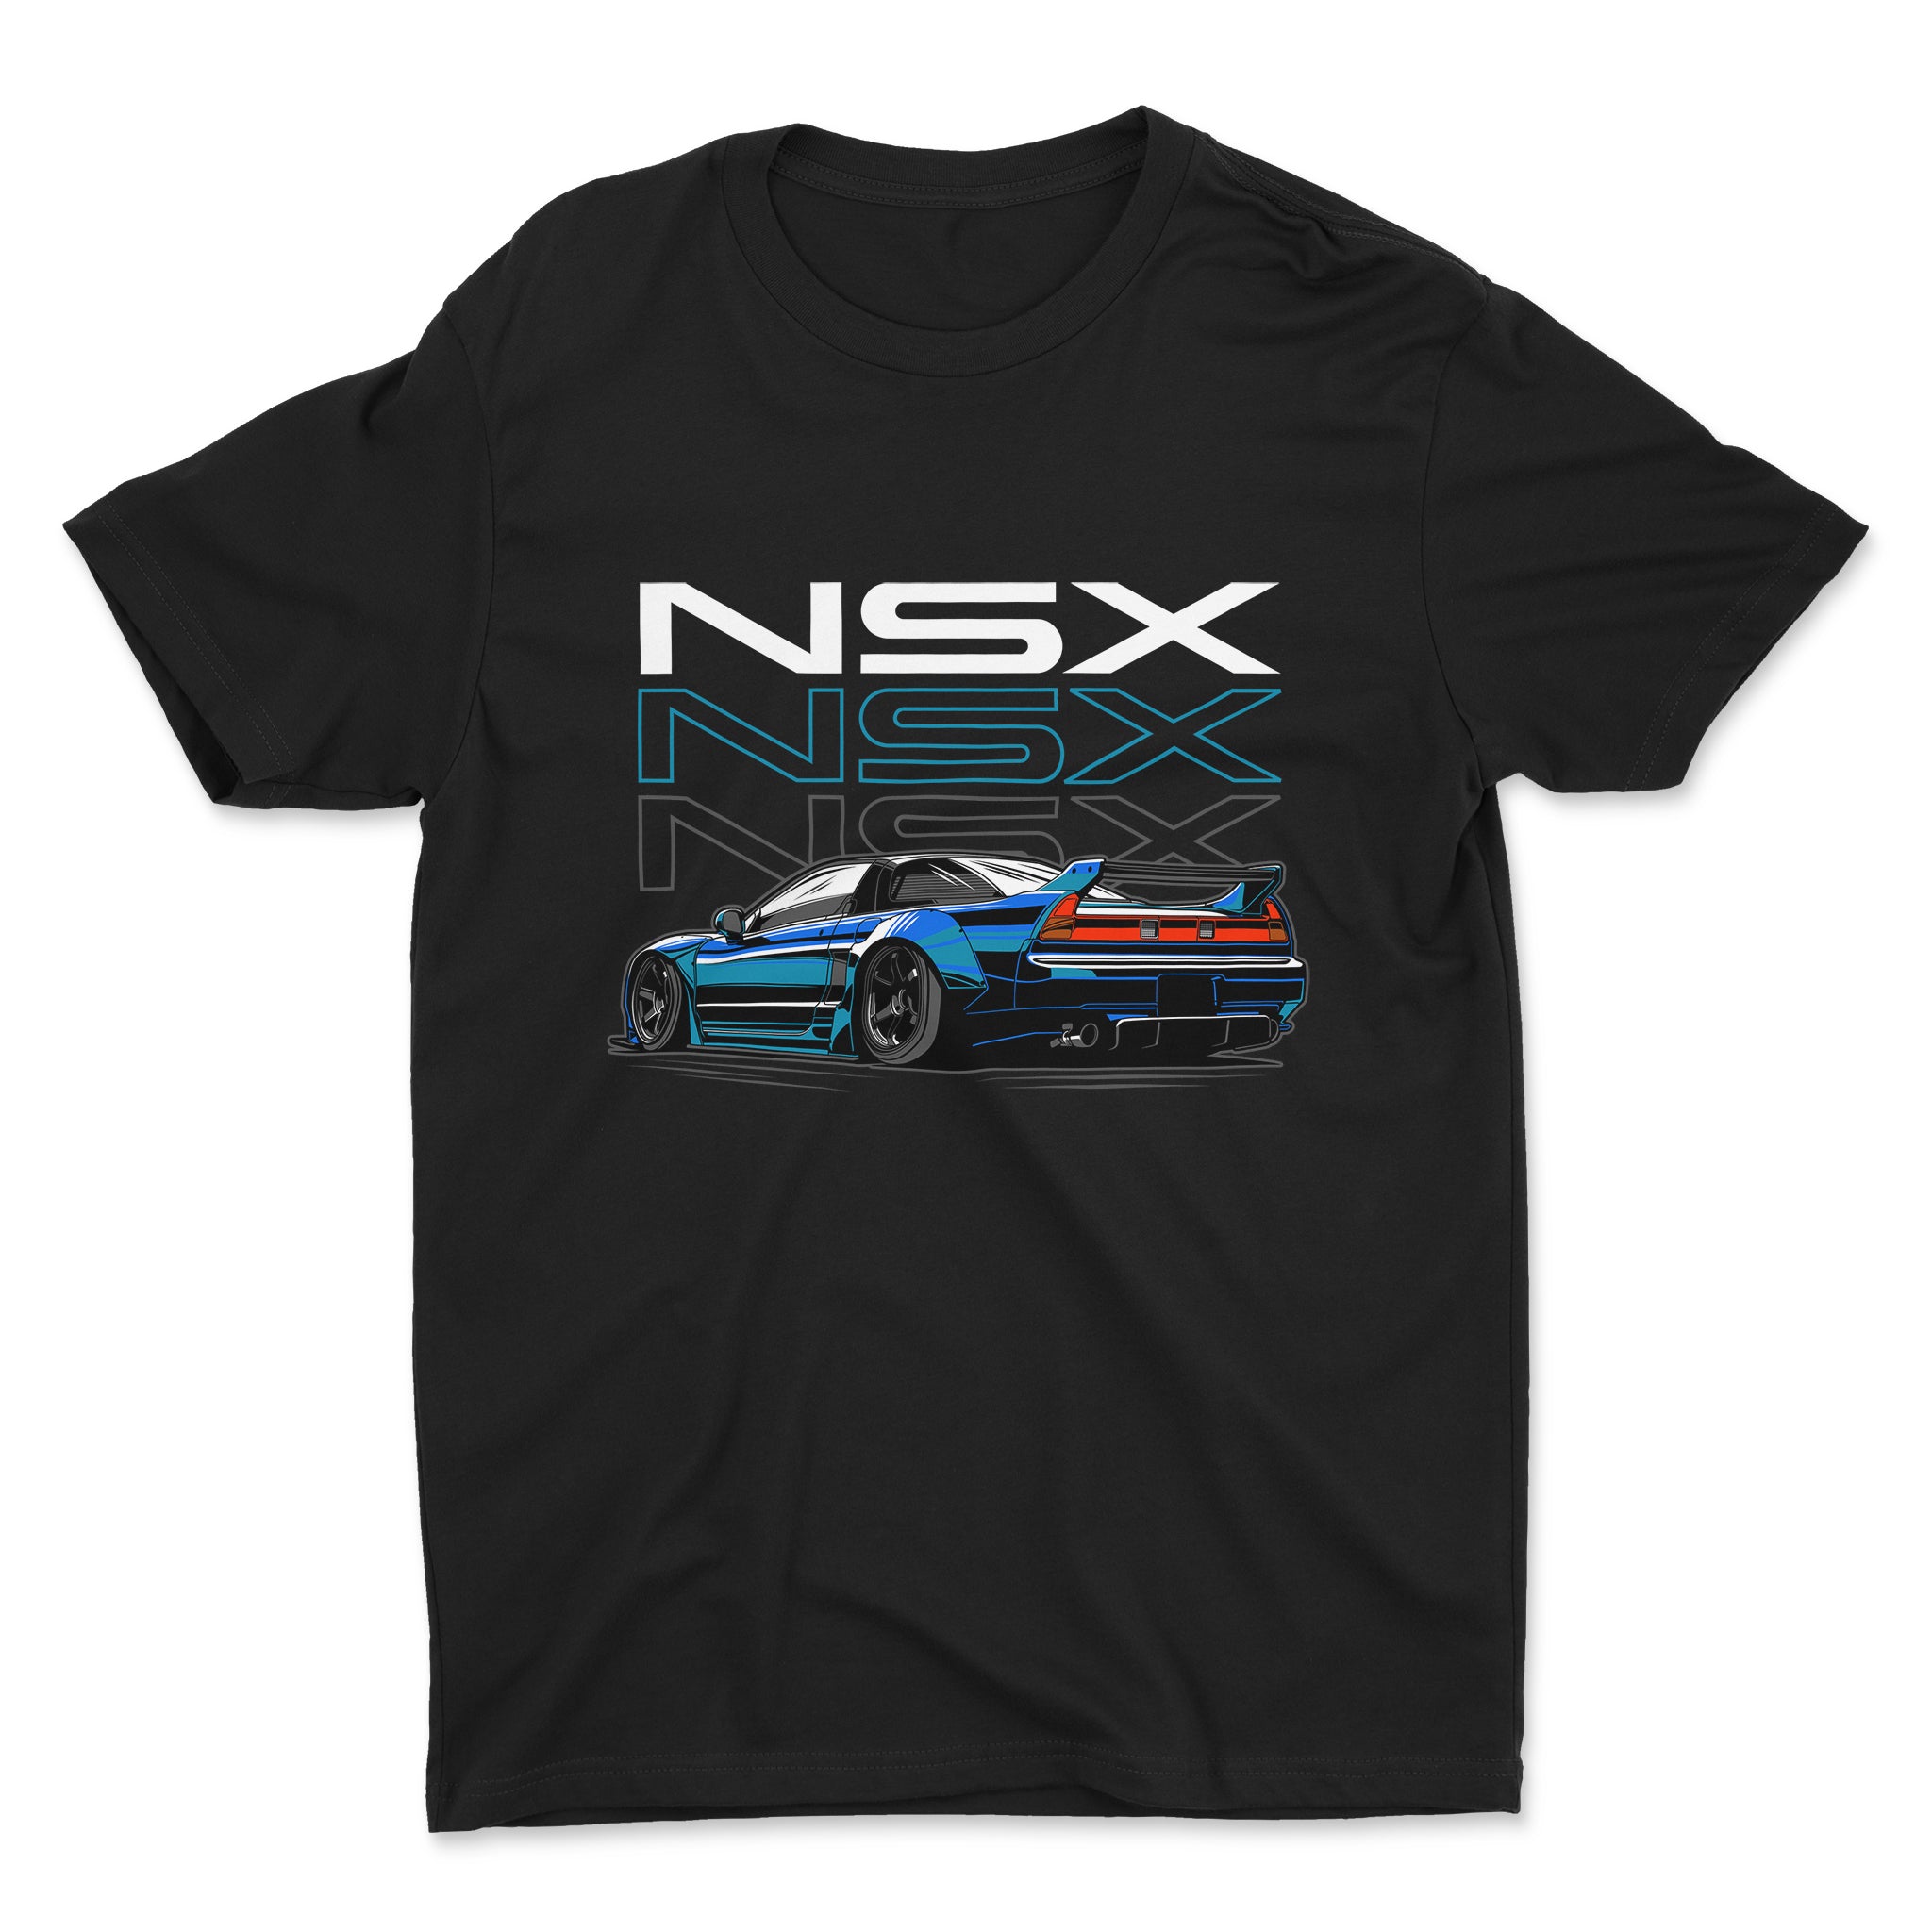 Honda NSX JDM Car T-Shirt in Black.